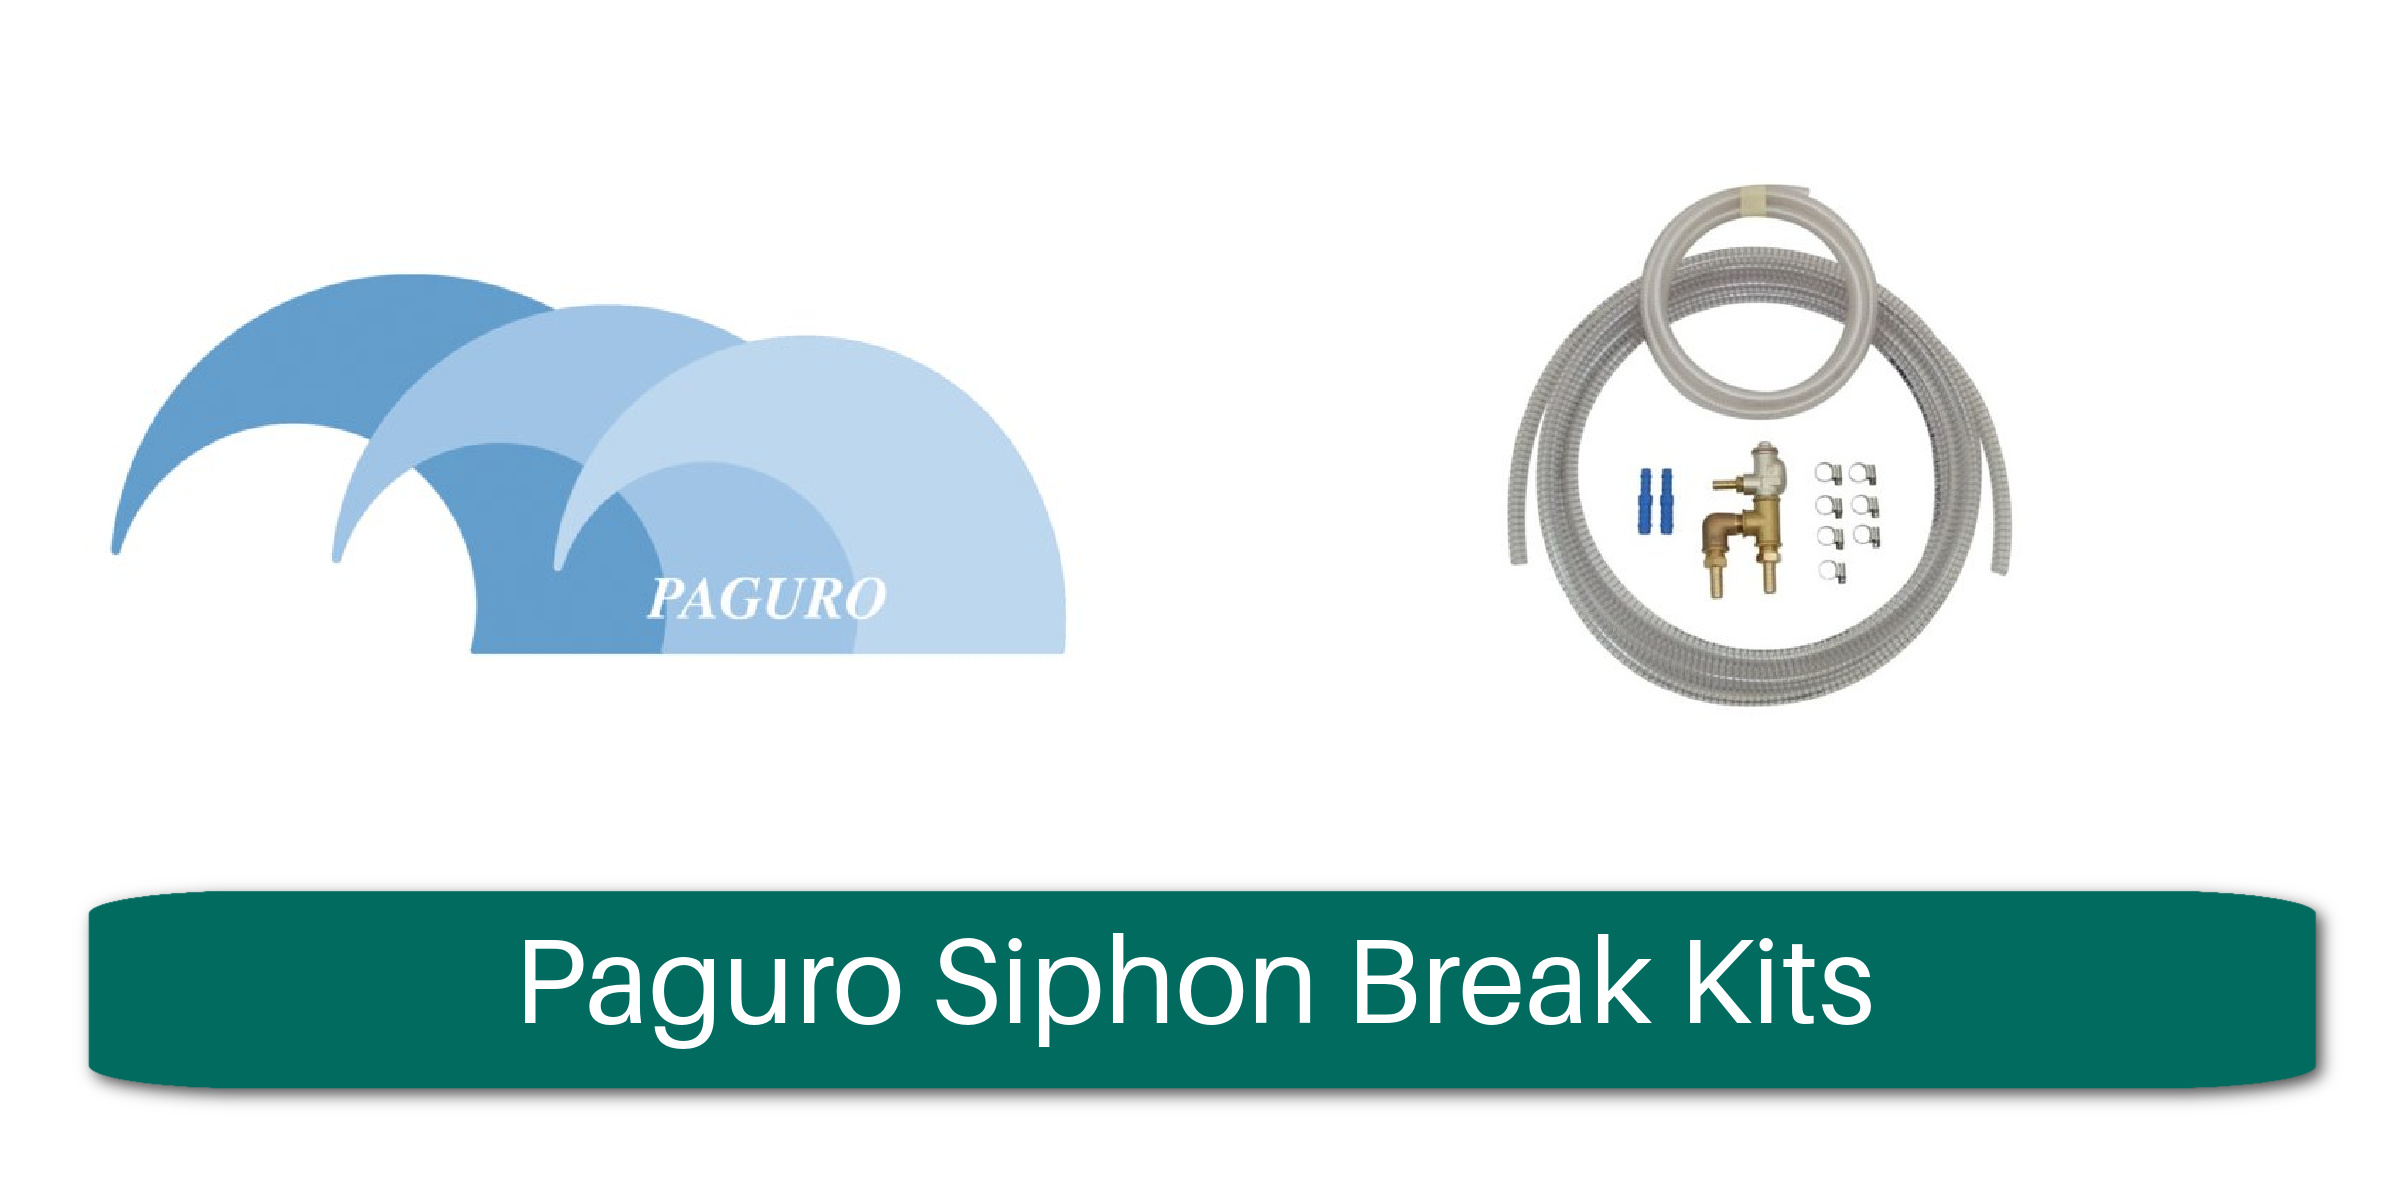 Paguro Siphon Break Kits